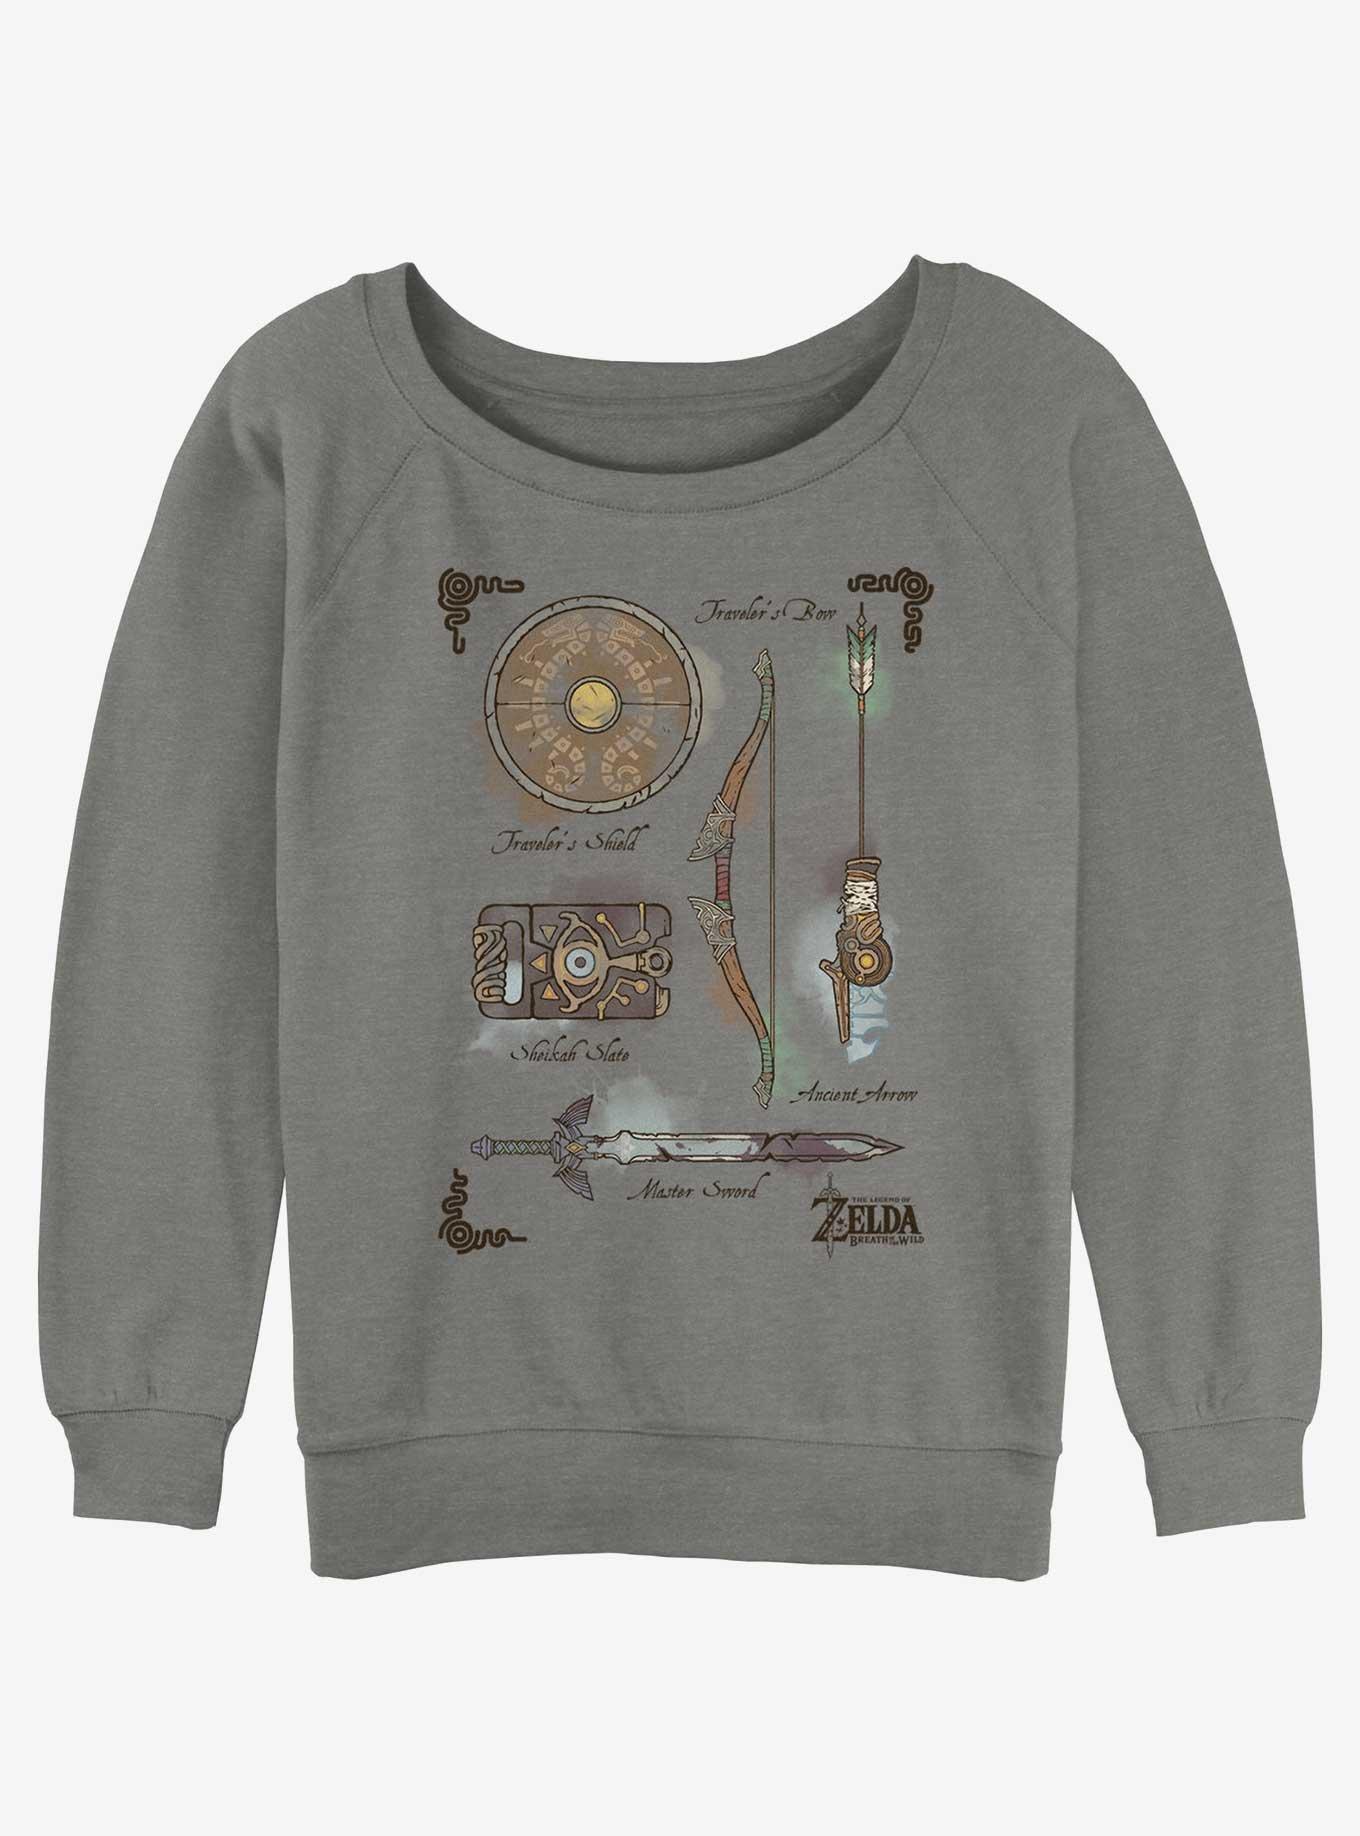 The Legend of Zelda Inventory Girls Slouchy Sweatshirt